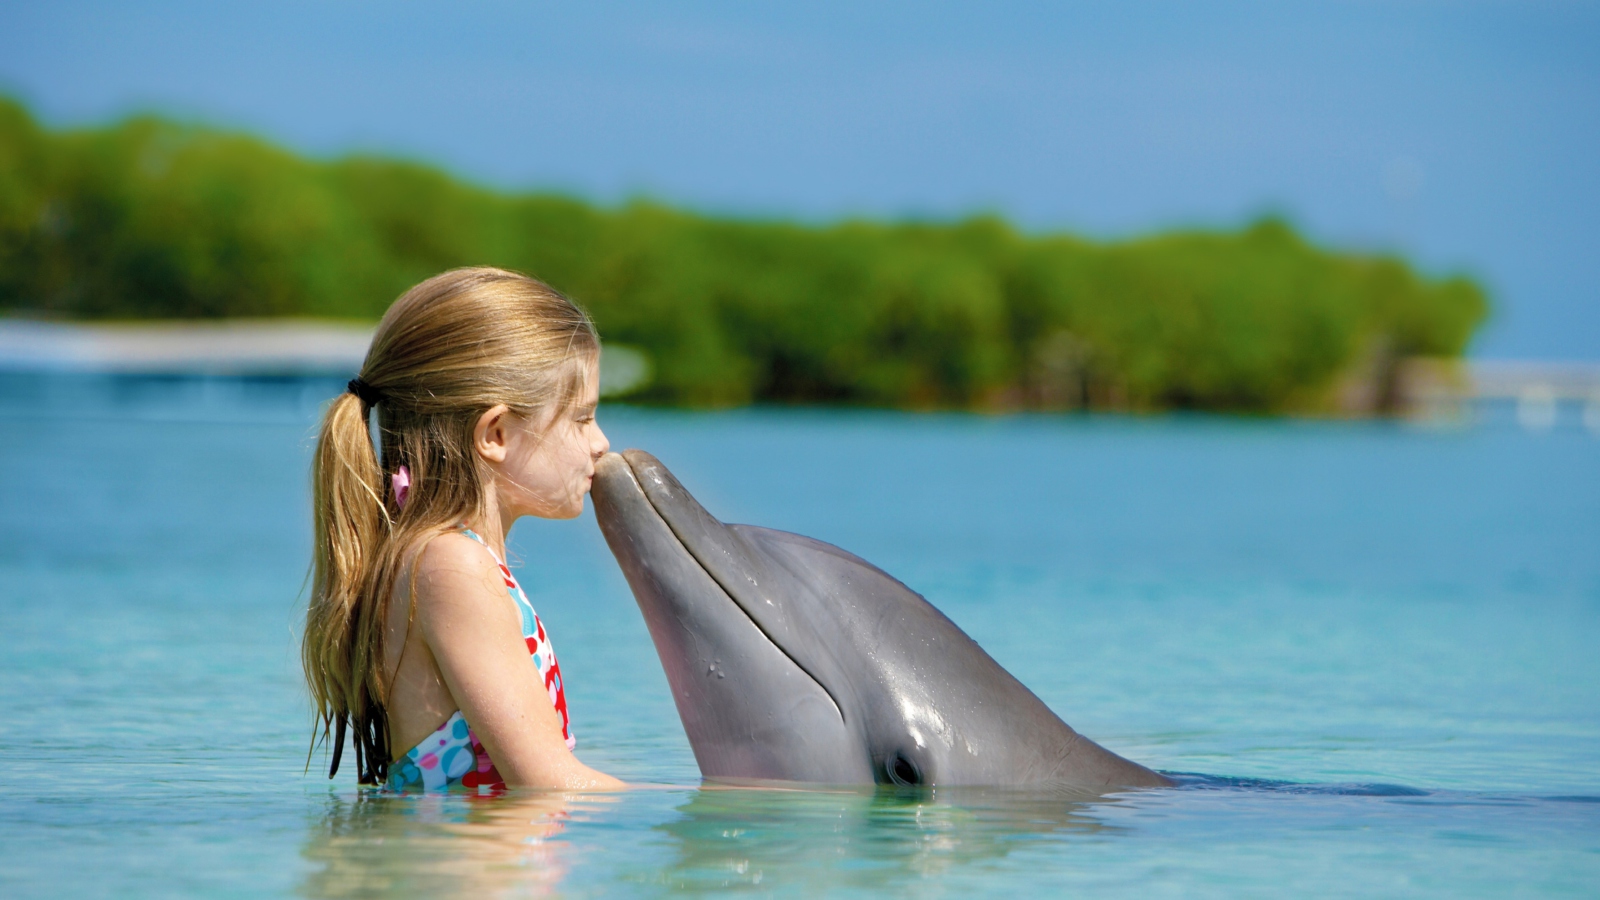 Обои Friendship Between Girl And Dolphin 1600x900